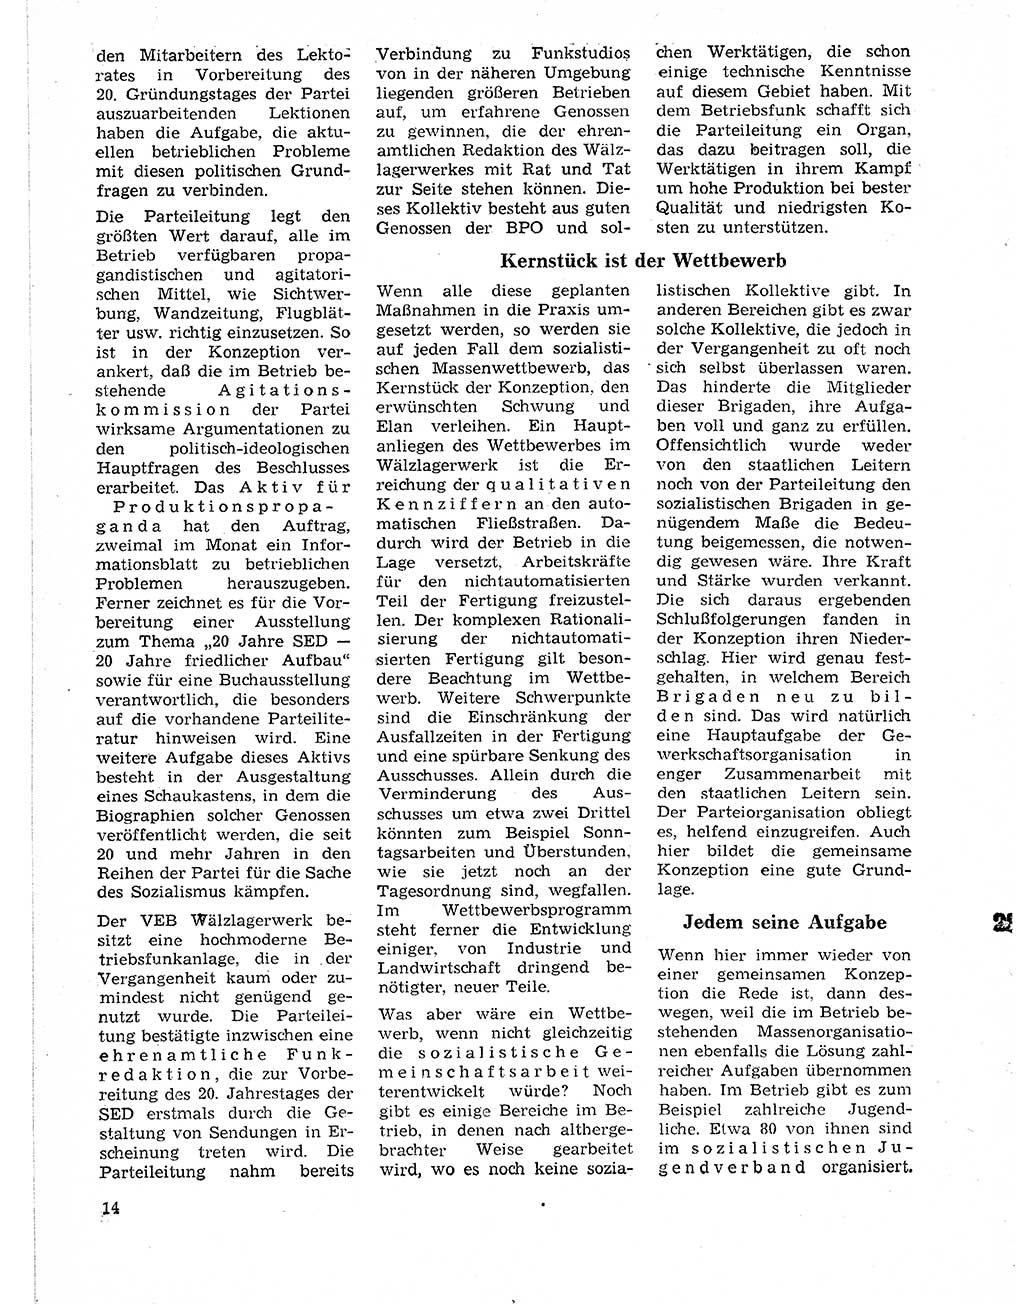 Neuer Weg (NW), Organ des Zentralkomitees (ZK) der SED (Sozialistische Einheitspartei Deutschlands) für Fragen des Parteilebens, 21. Jahrgang [Deutsche Demokratische Republik (DDR)] 1966, Seite 14 (NW ZK SED DDR 1966, S. 14)